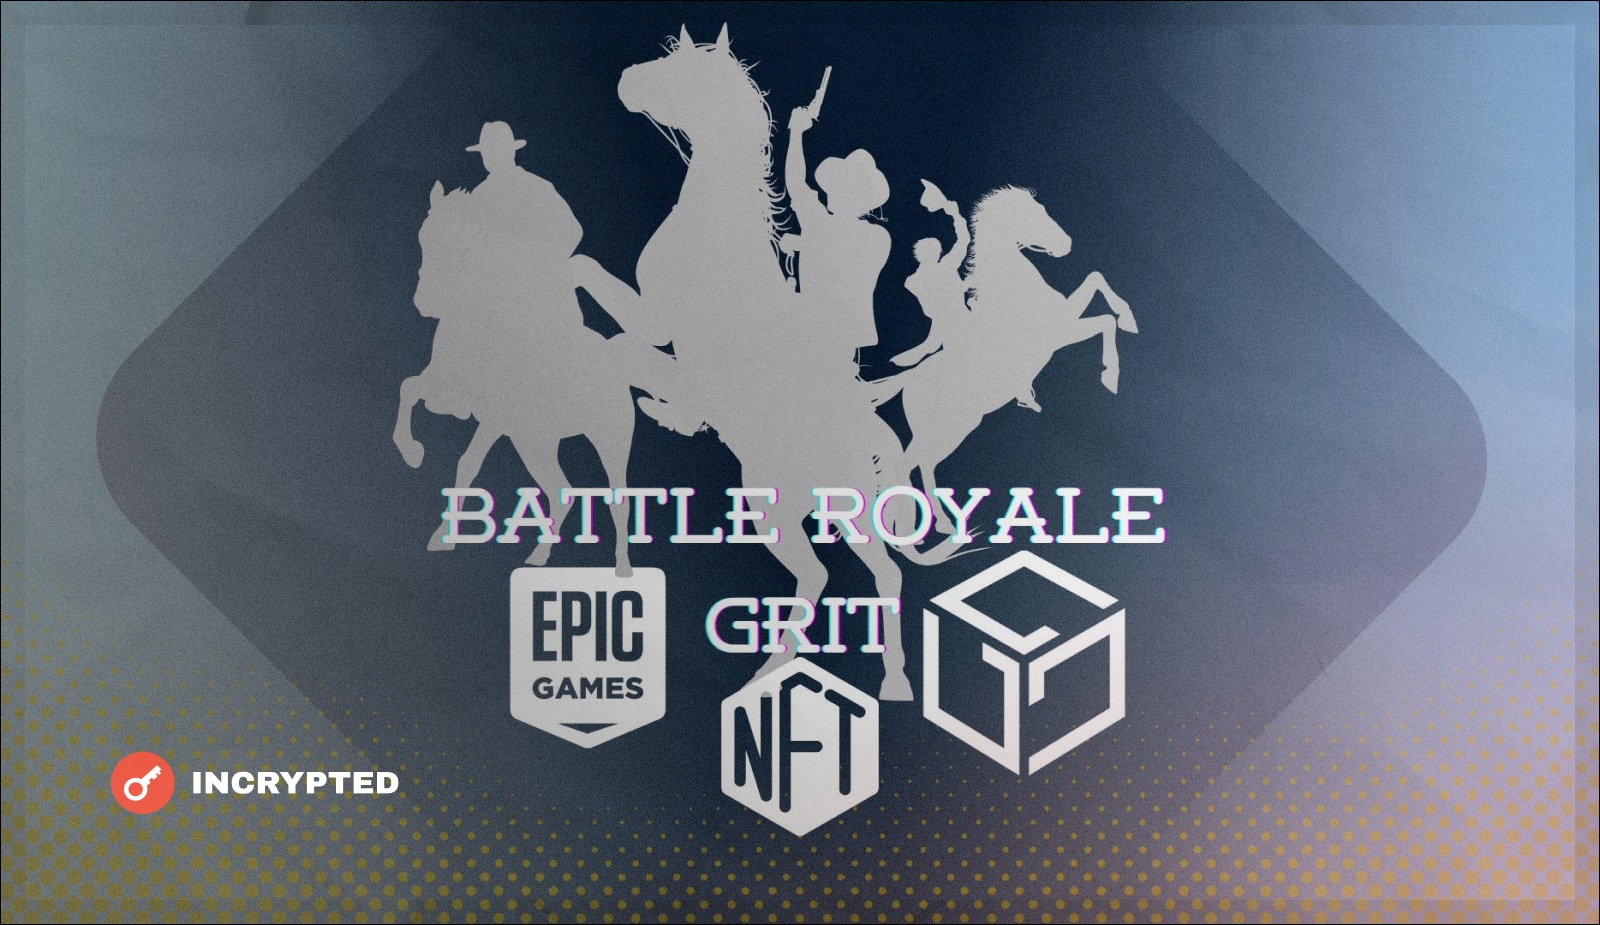 Epic Games представят первую NFT-игру в своем магазине. Заглавный коллаж новости.